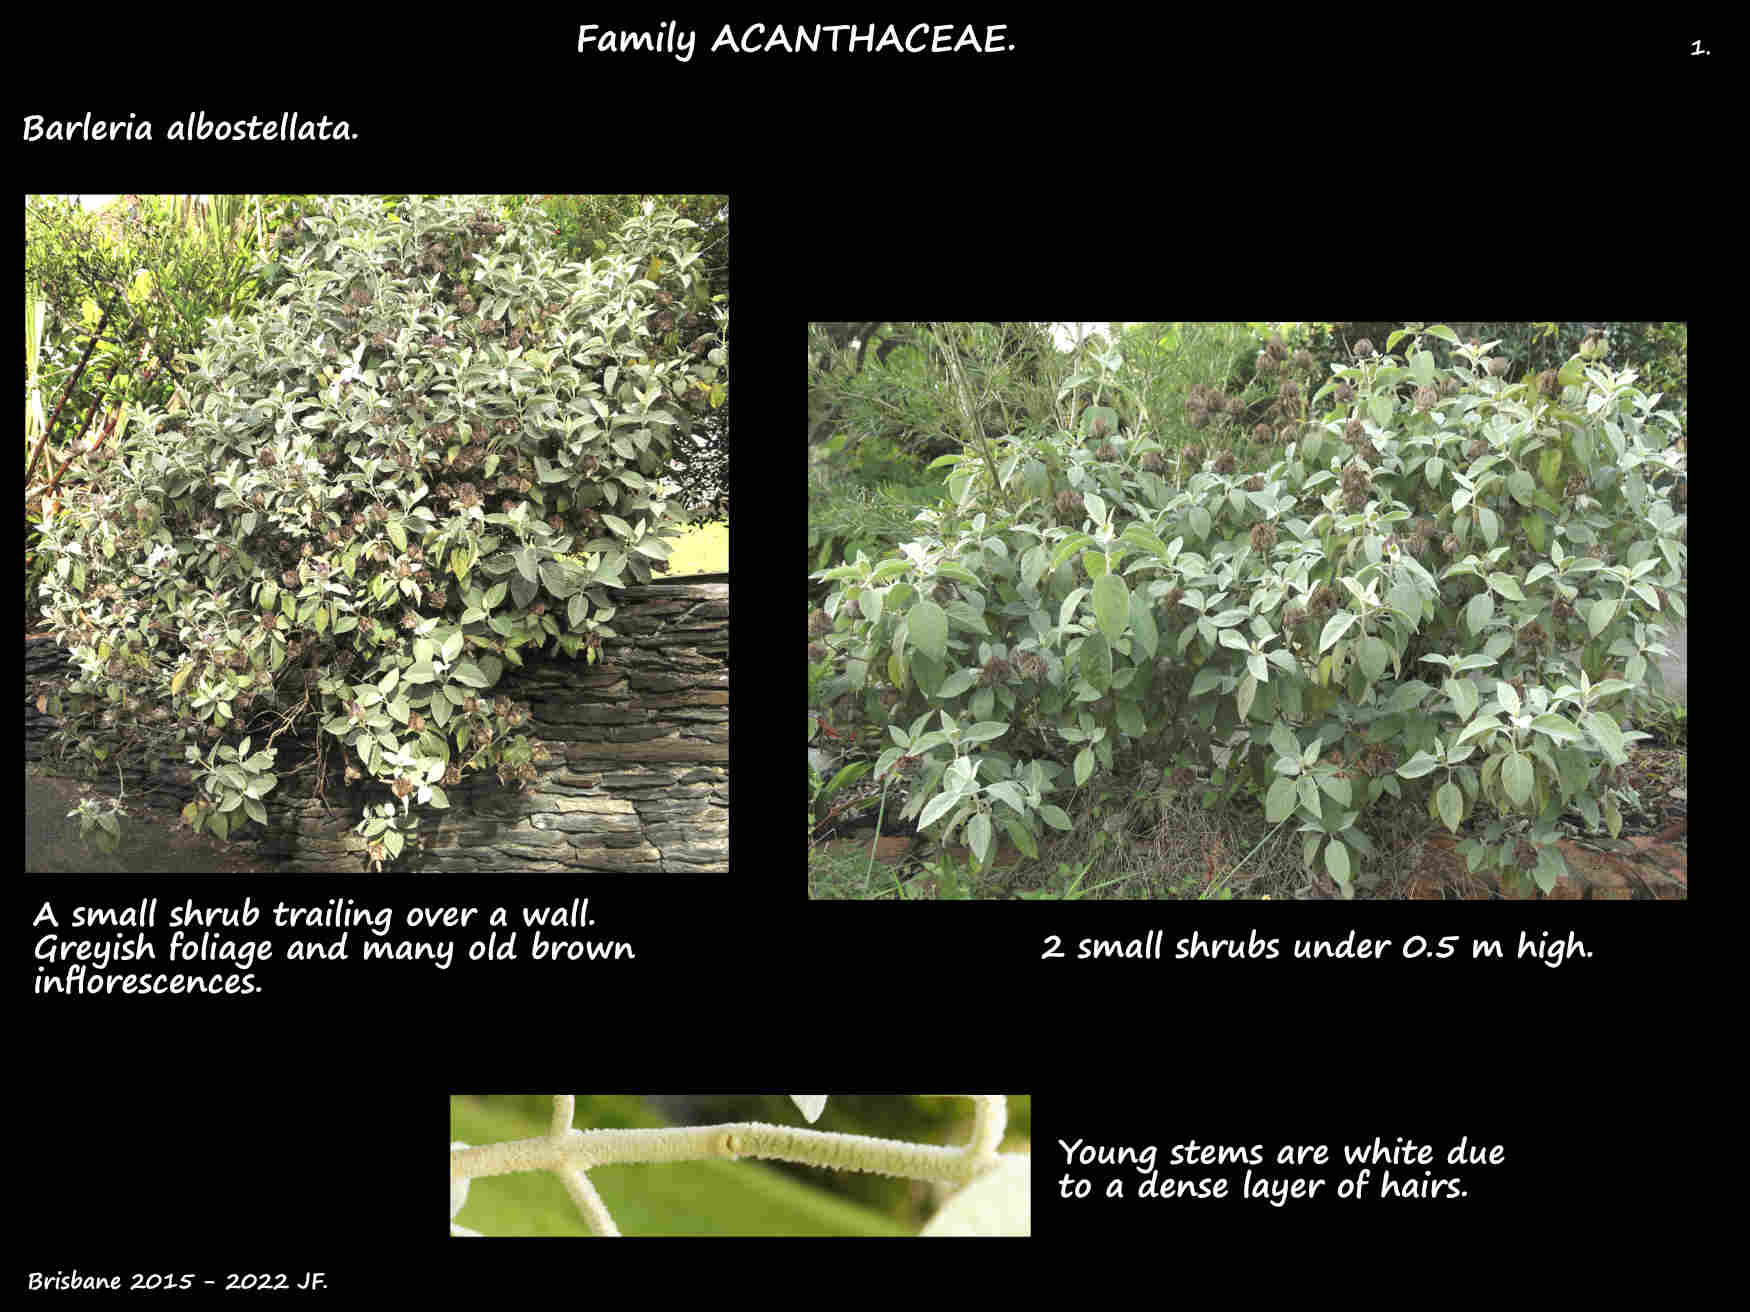 1 Barleria albostellata shrubs & stems